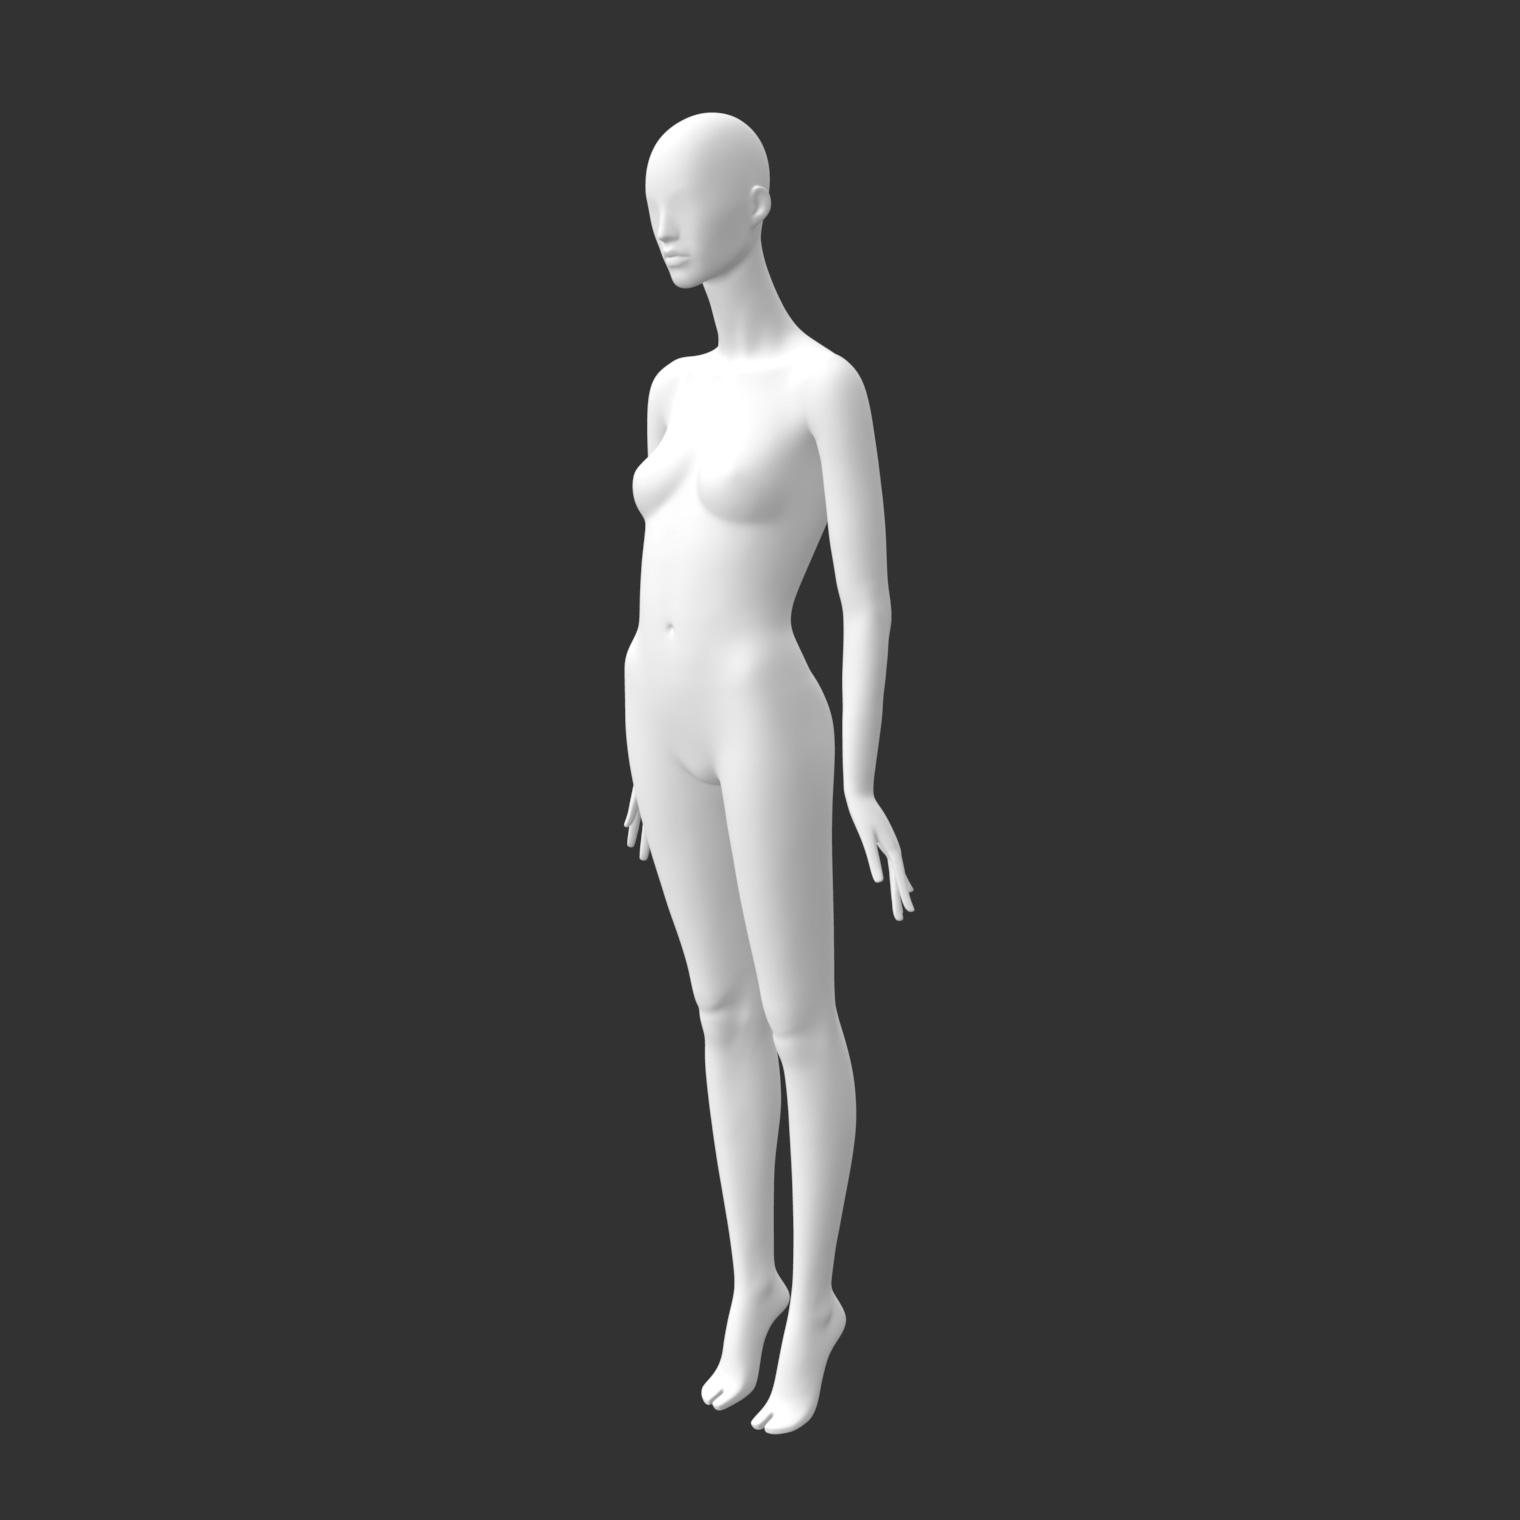 Женский манекен 3d модель для печати абстрактной подставки на высоком каблуке на цыпочках